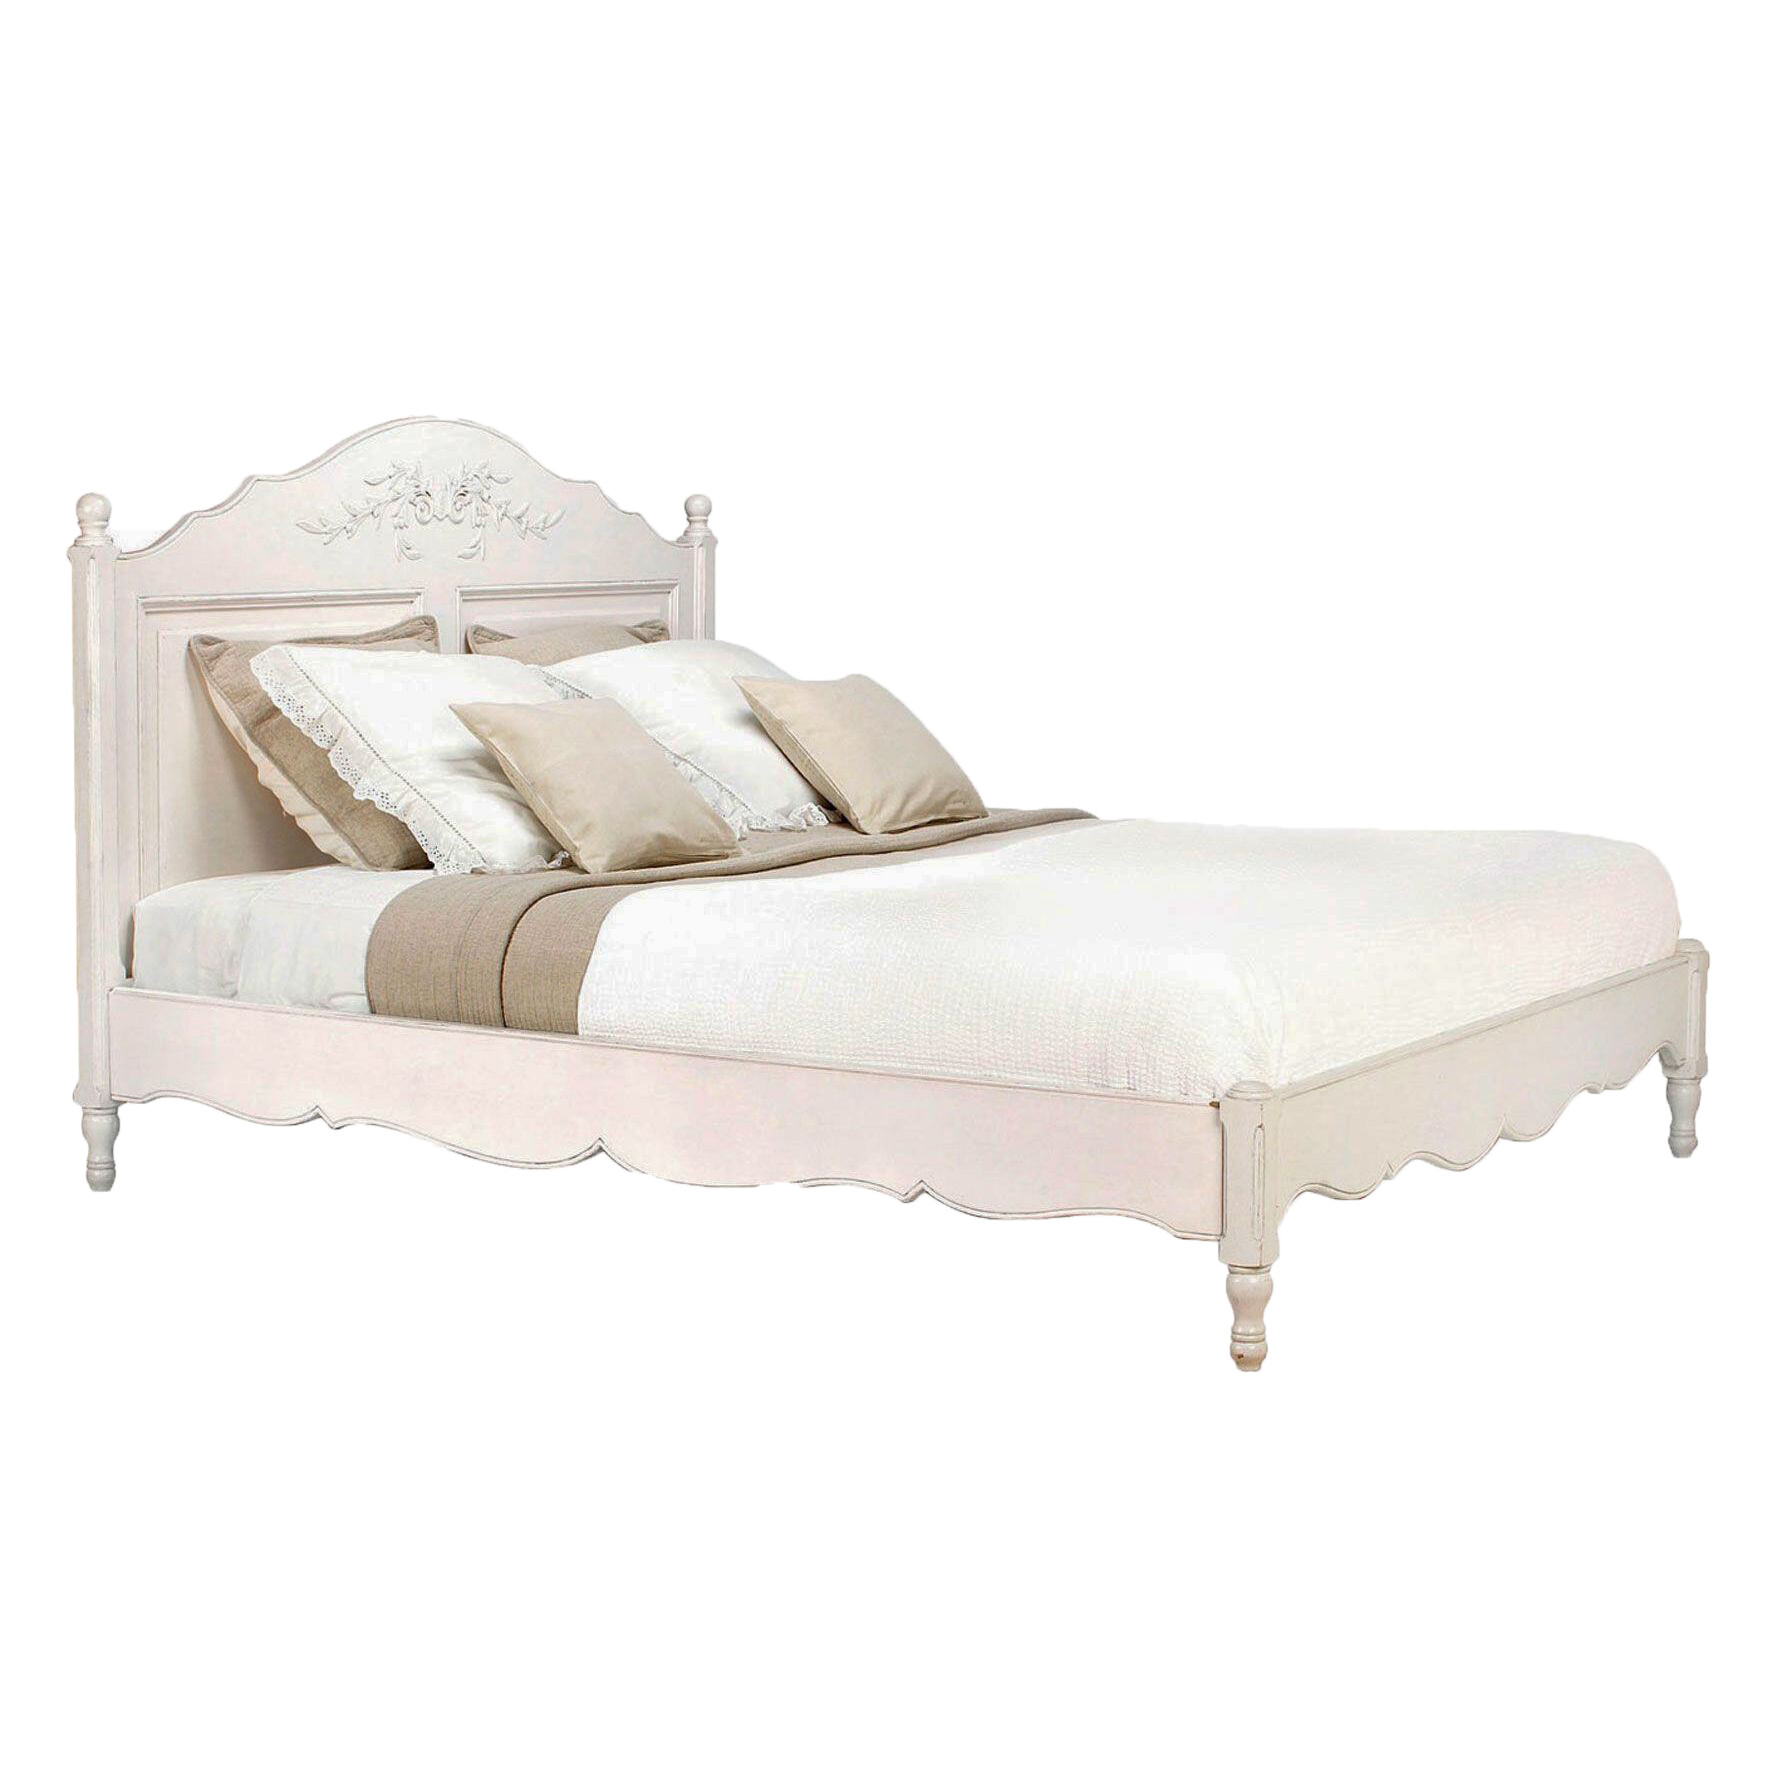 Кровать двуспальная деревянная с низким изножьем 180х200 см молочно-белая &quot;Марсель&quot;